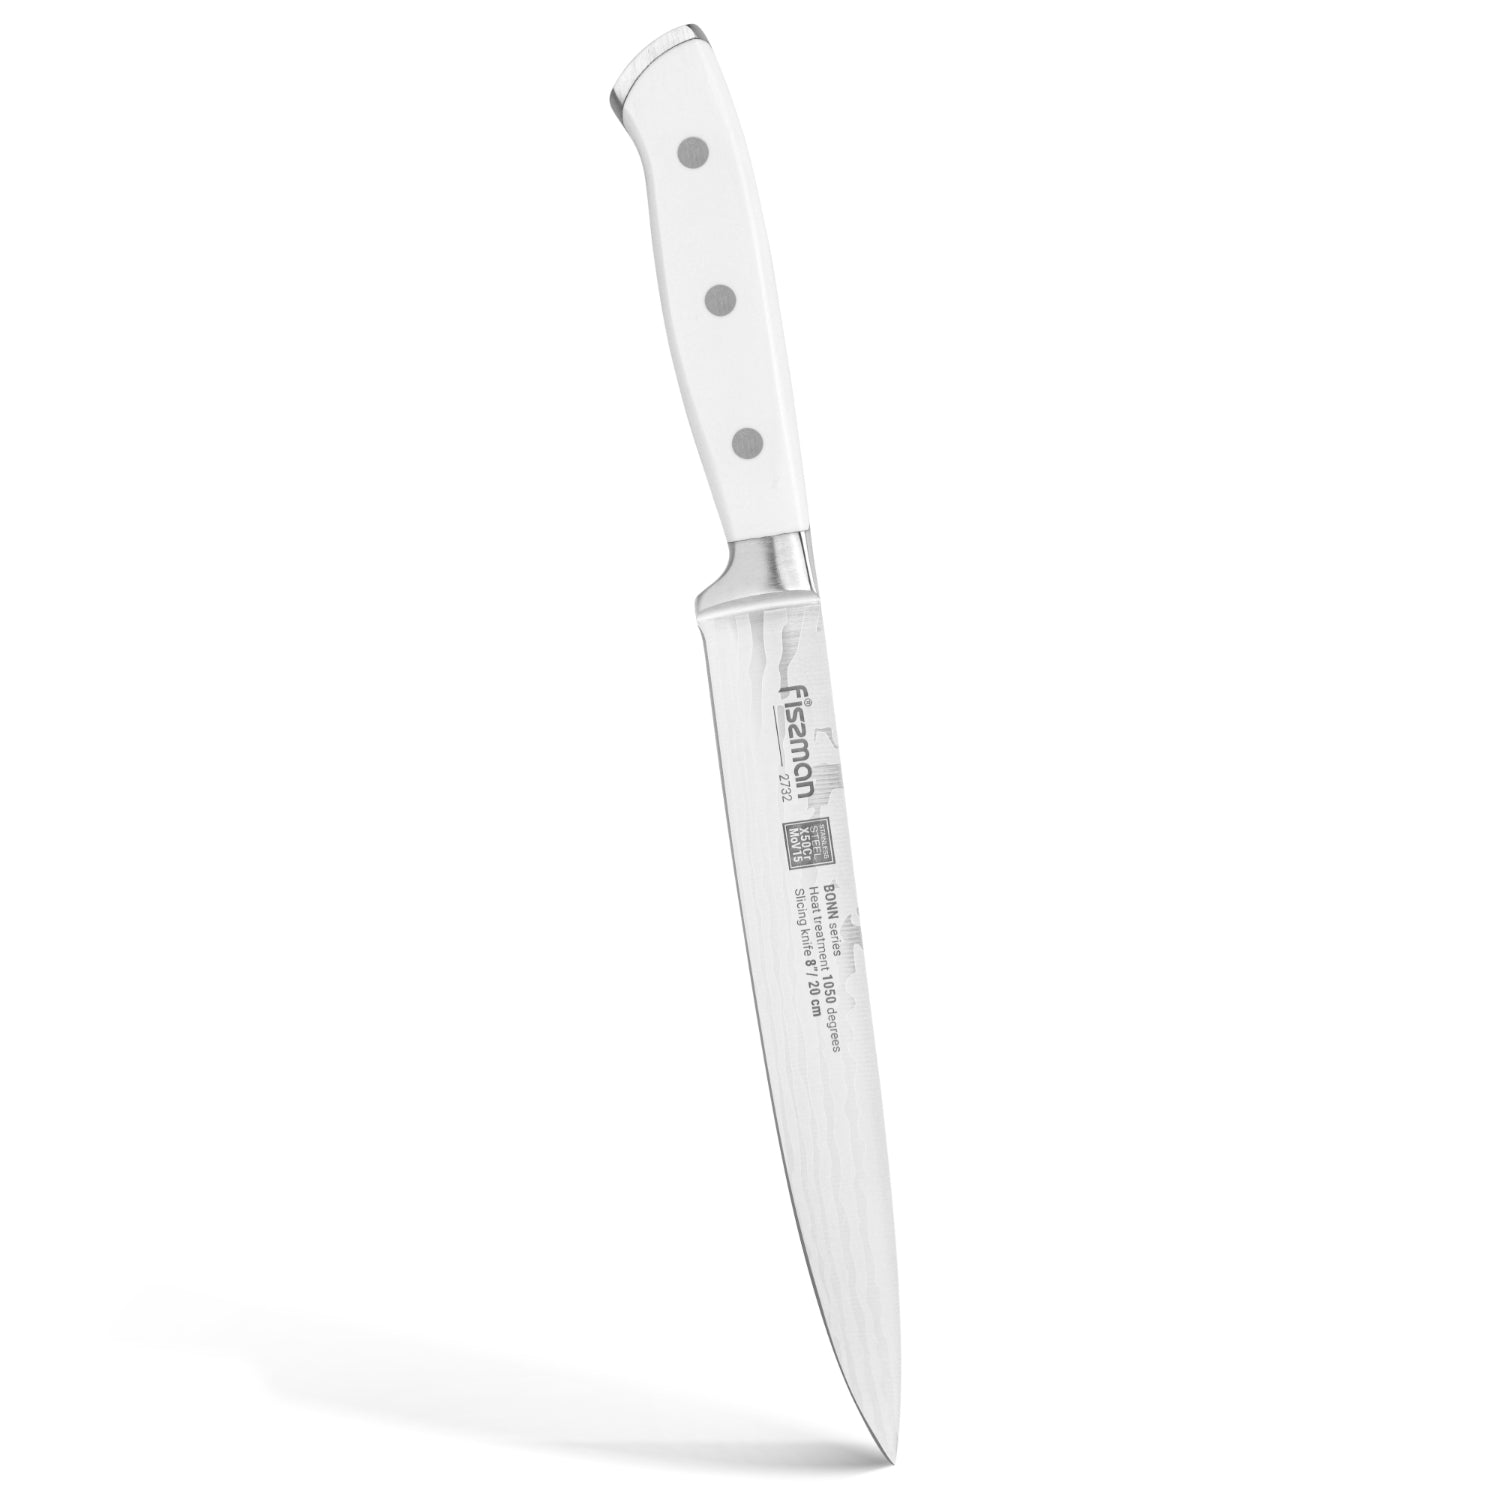 Fissman 8'' Slicing Knife Bonn - X50CrMoV15 steel